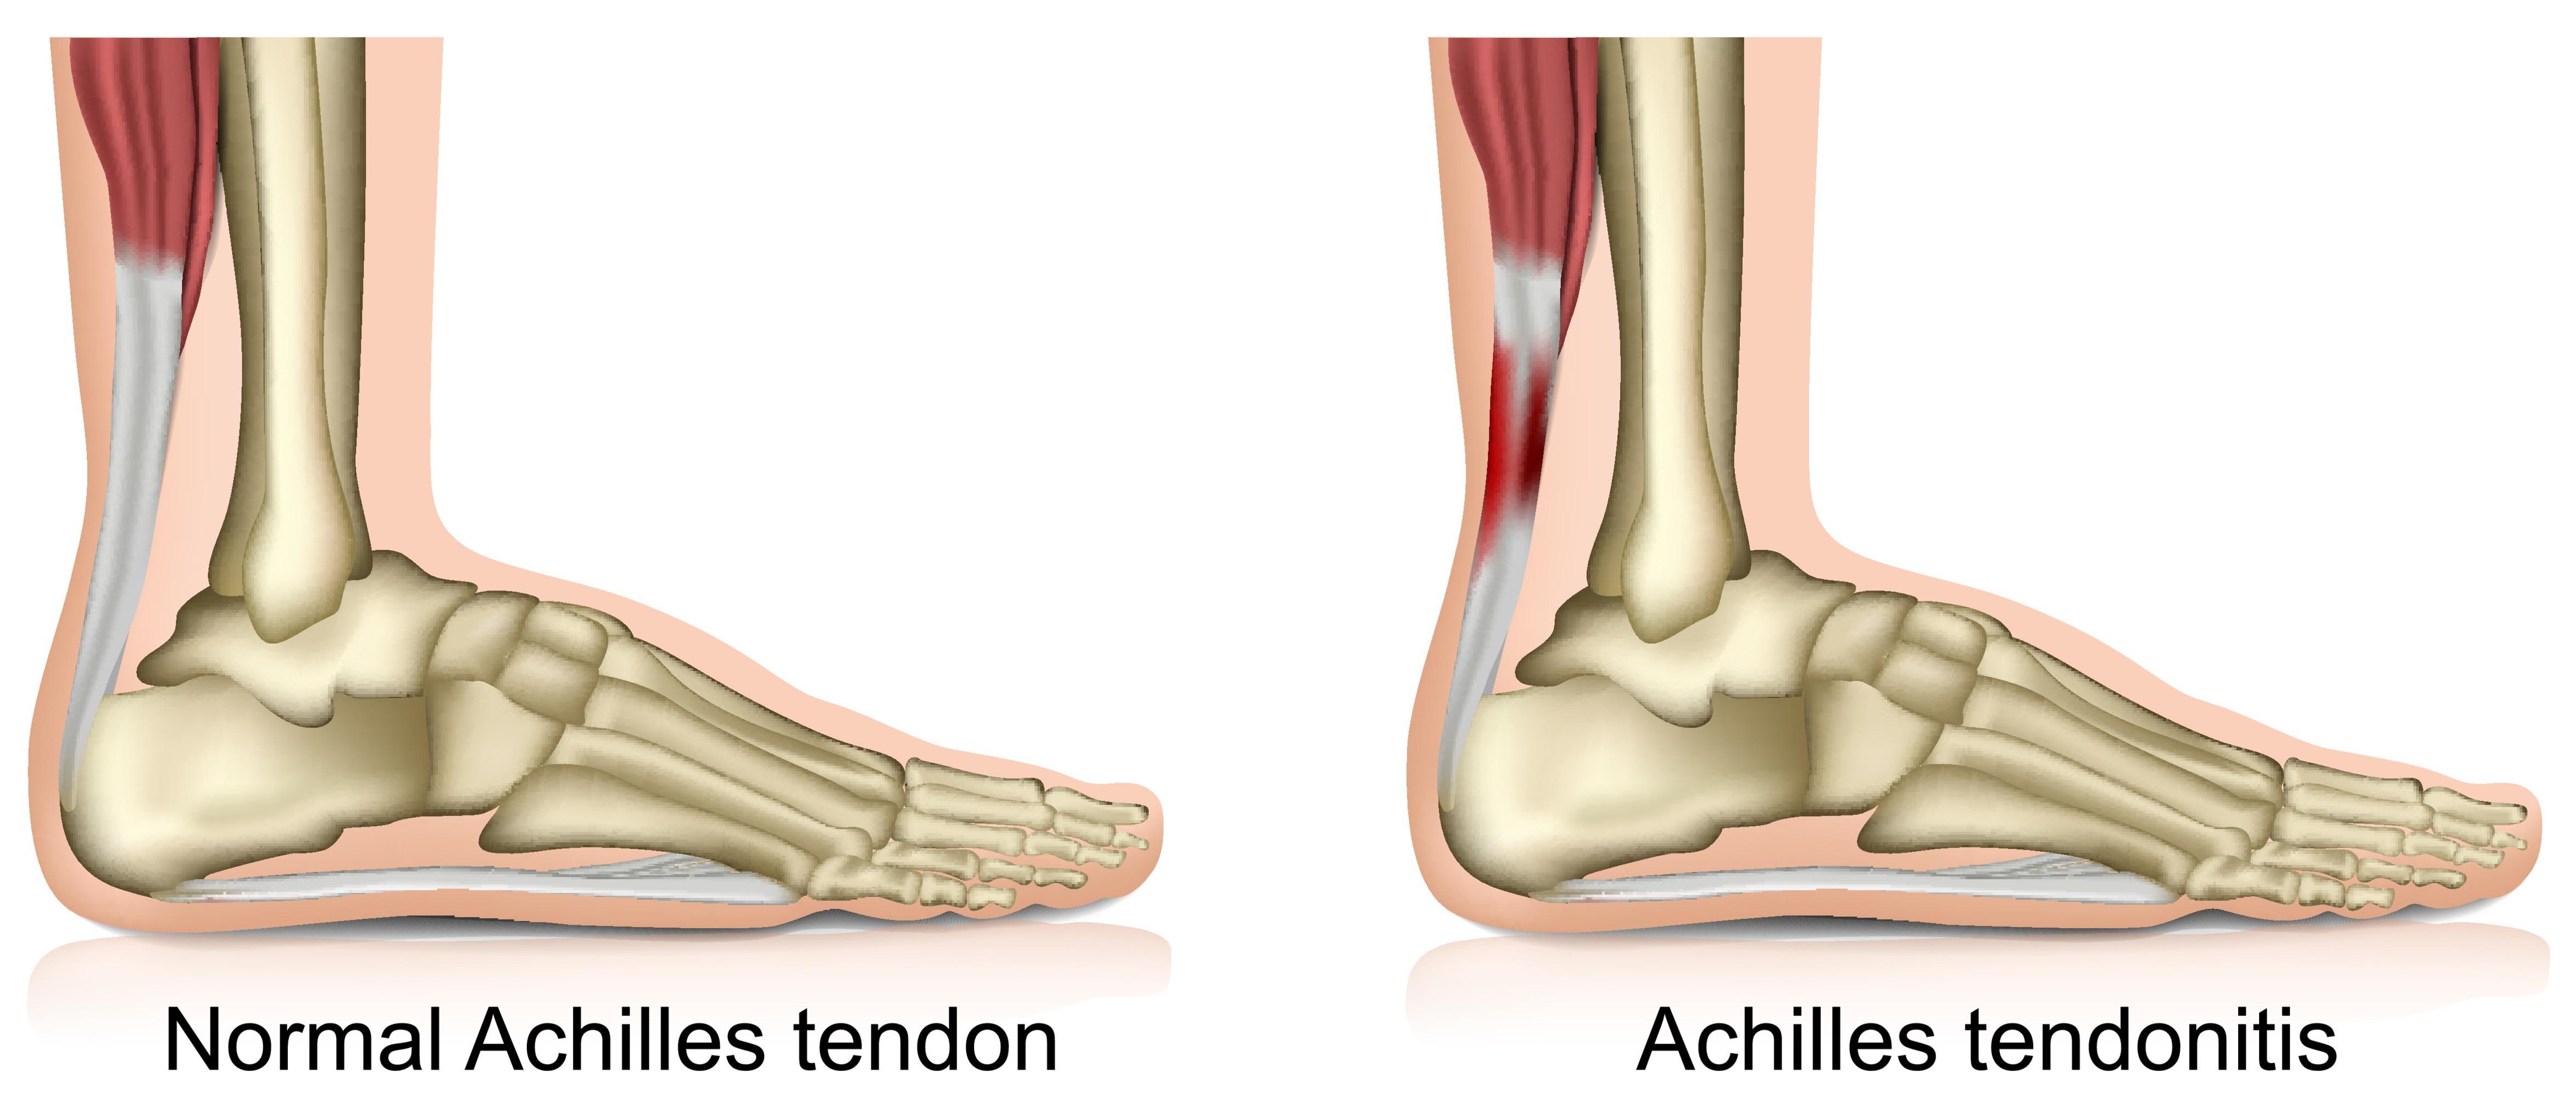 tender achilles tendon treatment